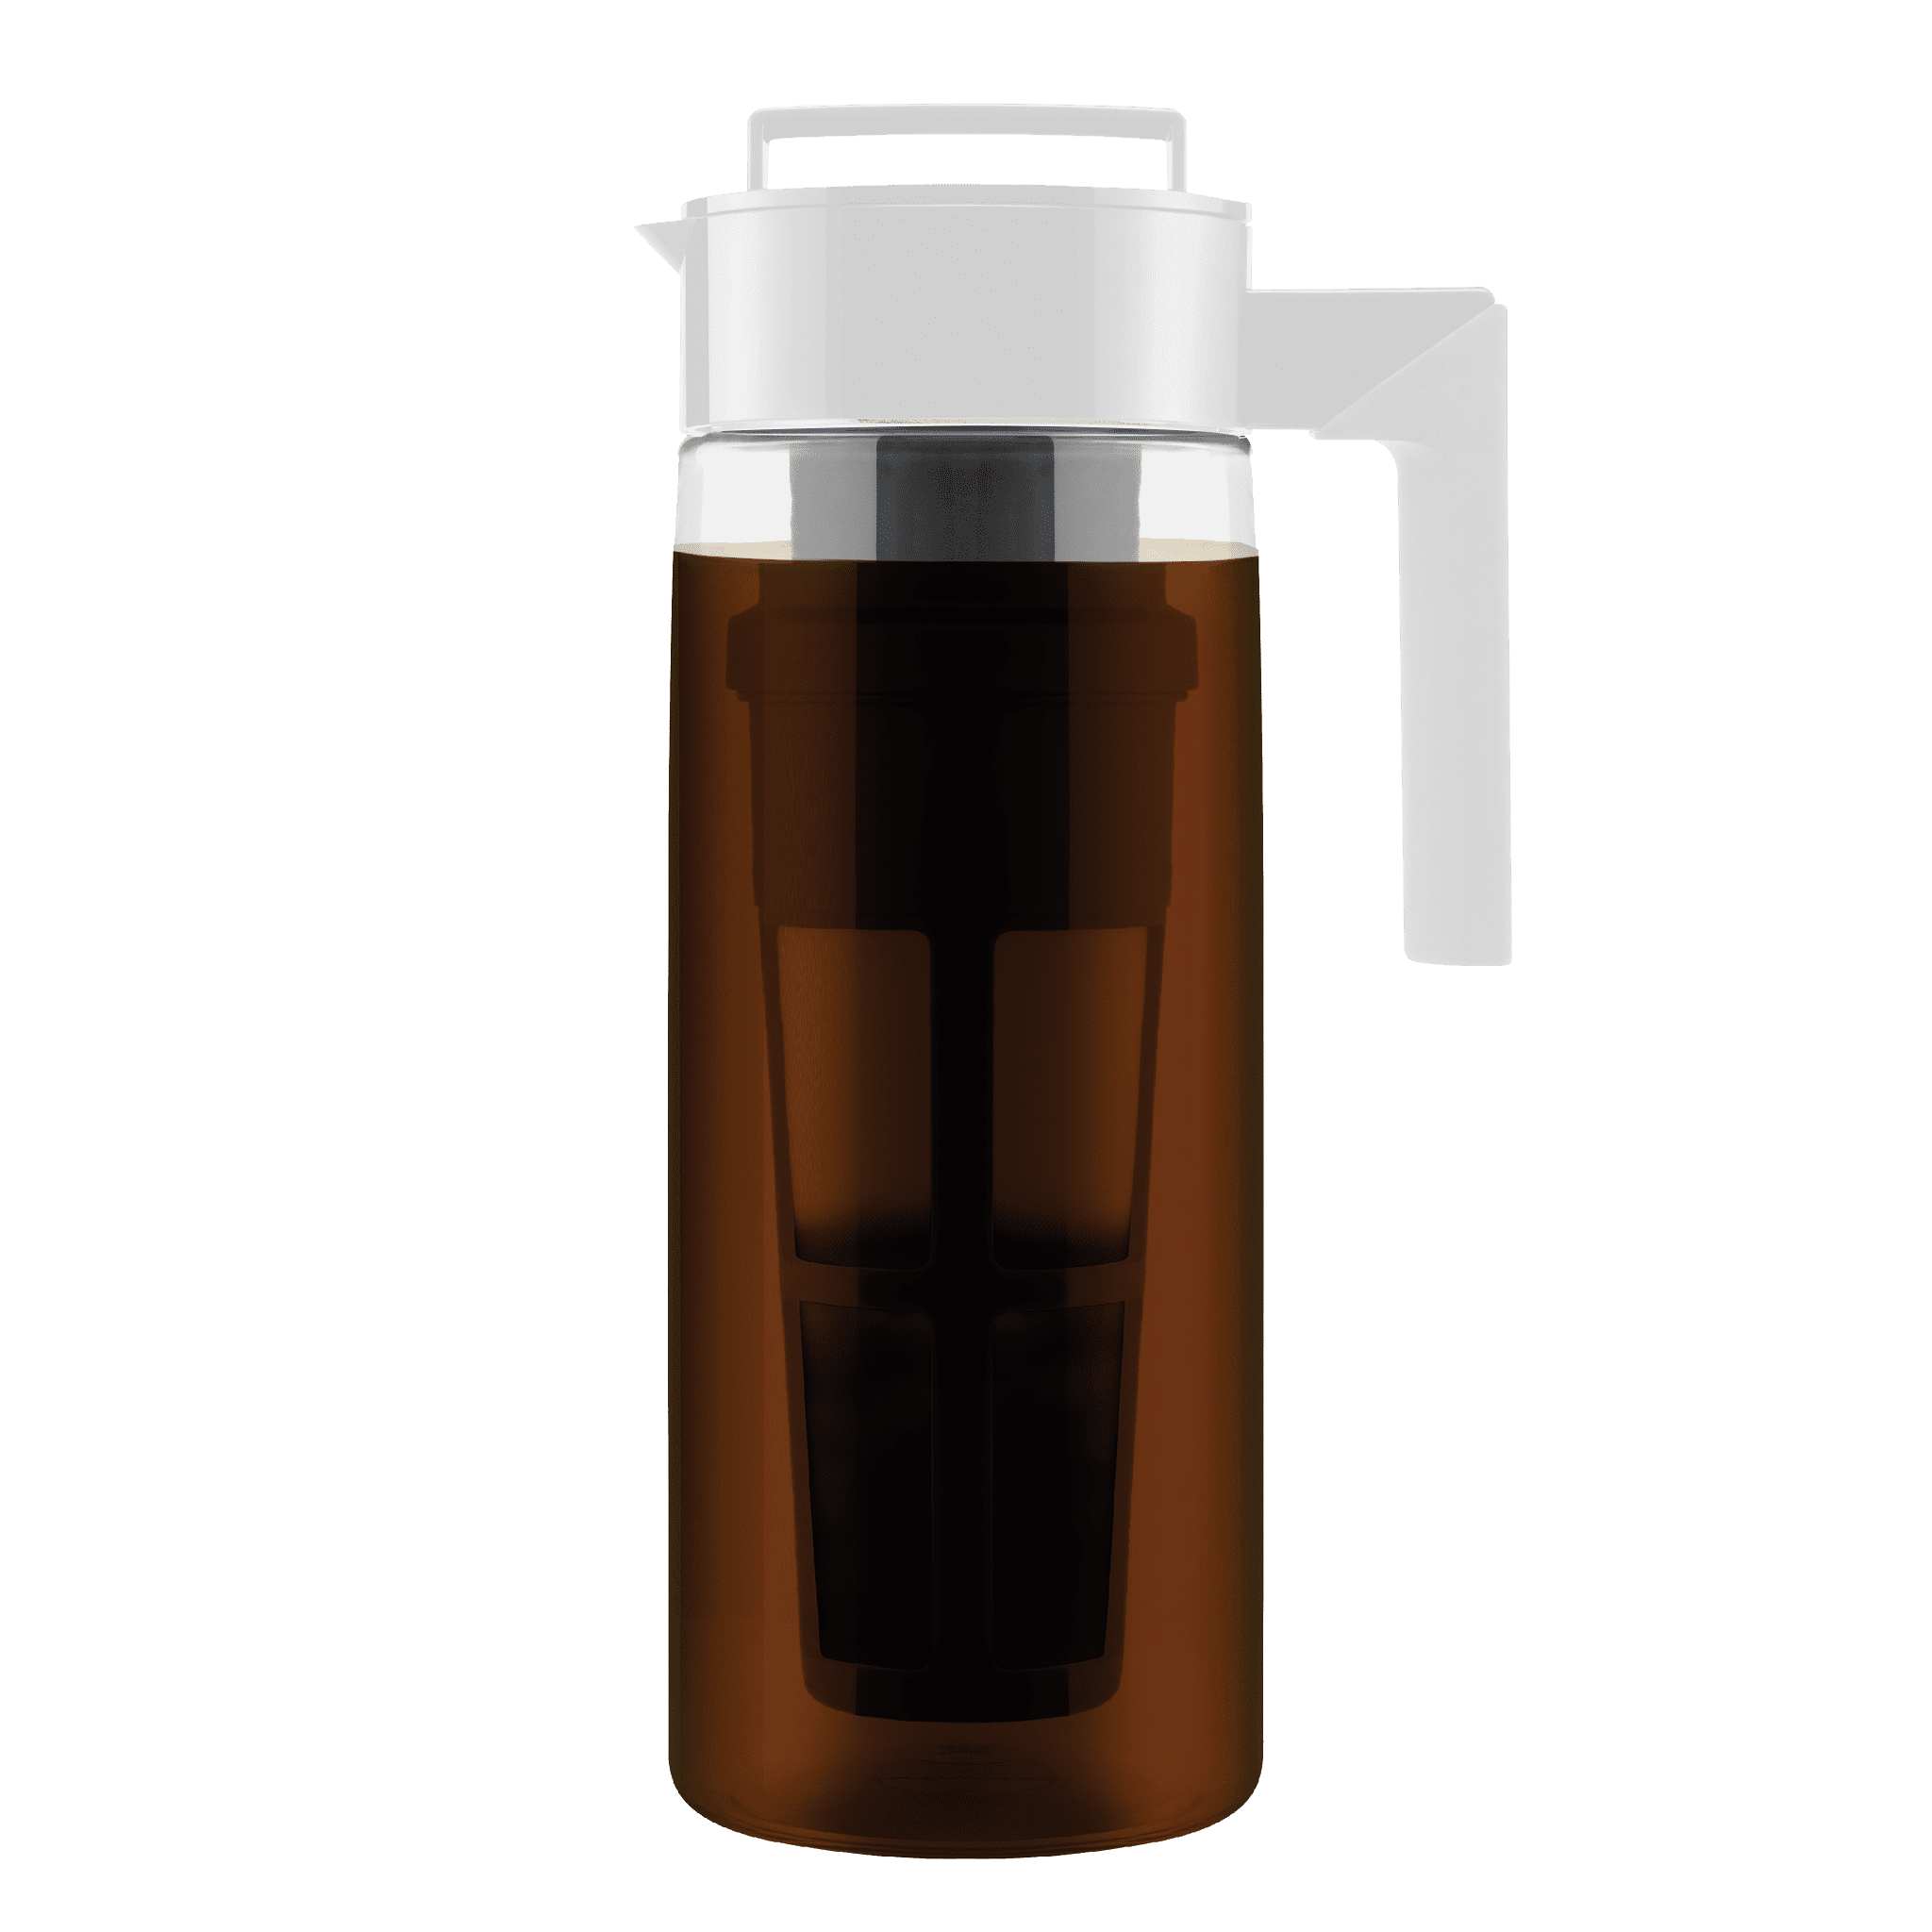 Sivaphe Large Cold Brewer Coffee Maker 2 Quart, Dishwasher Safty